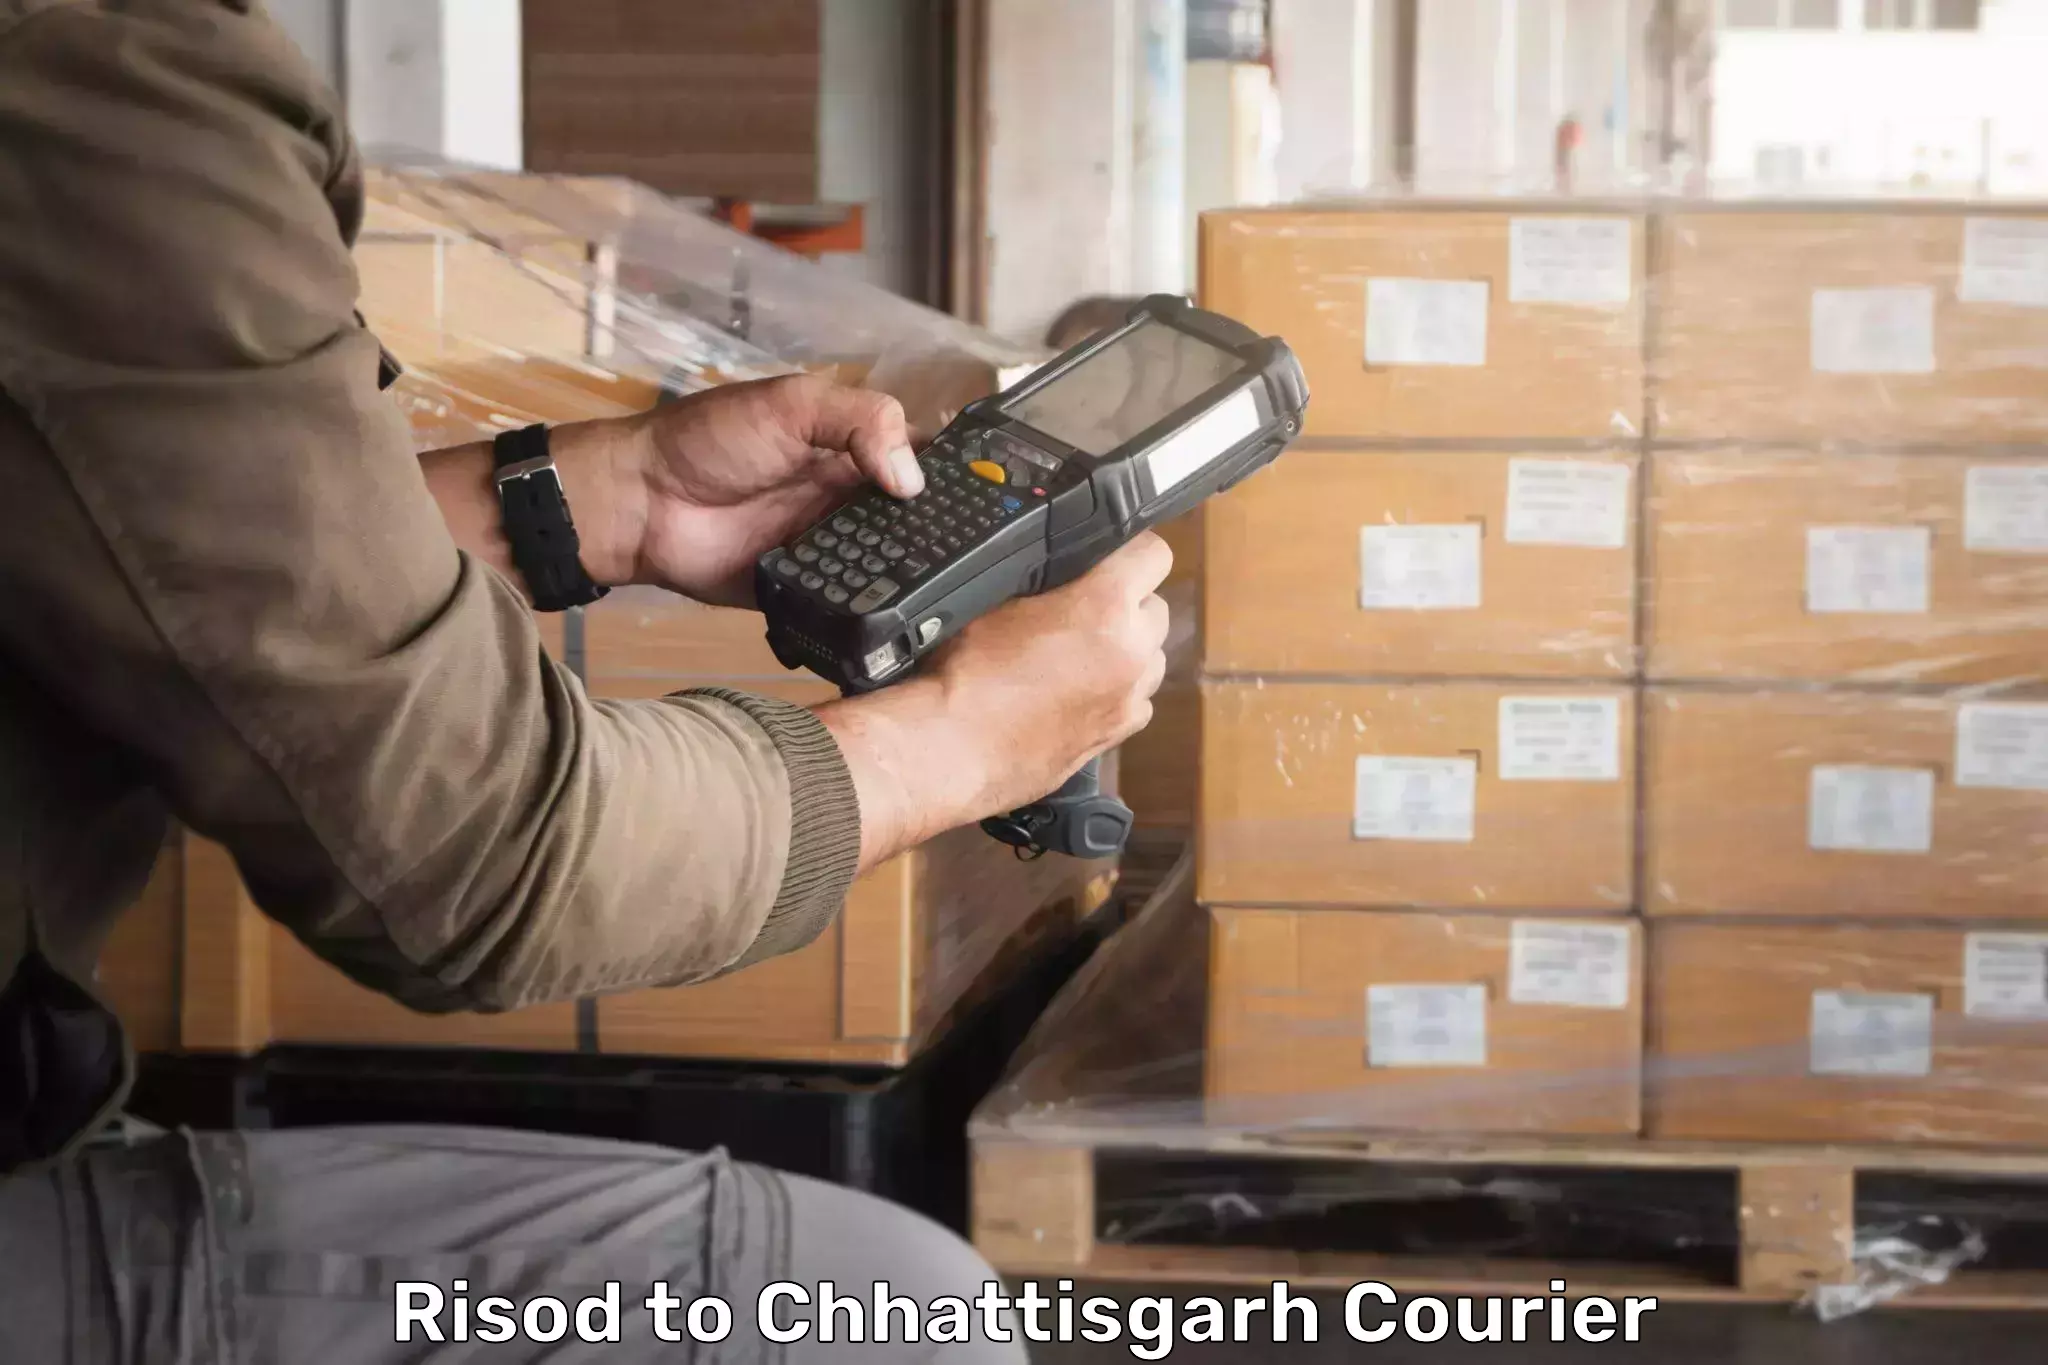 Domestic courier Risod to Raigarh Chhattisgarh